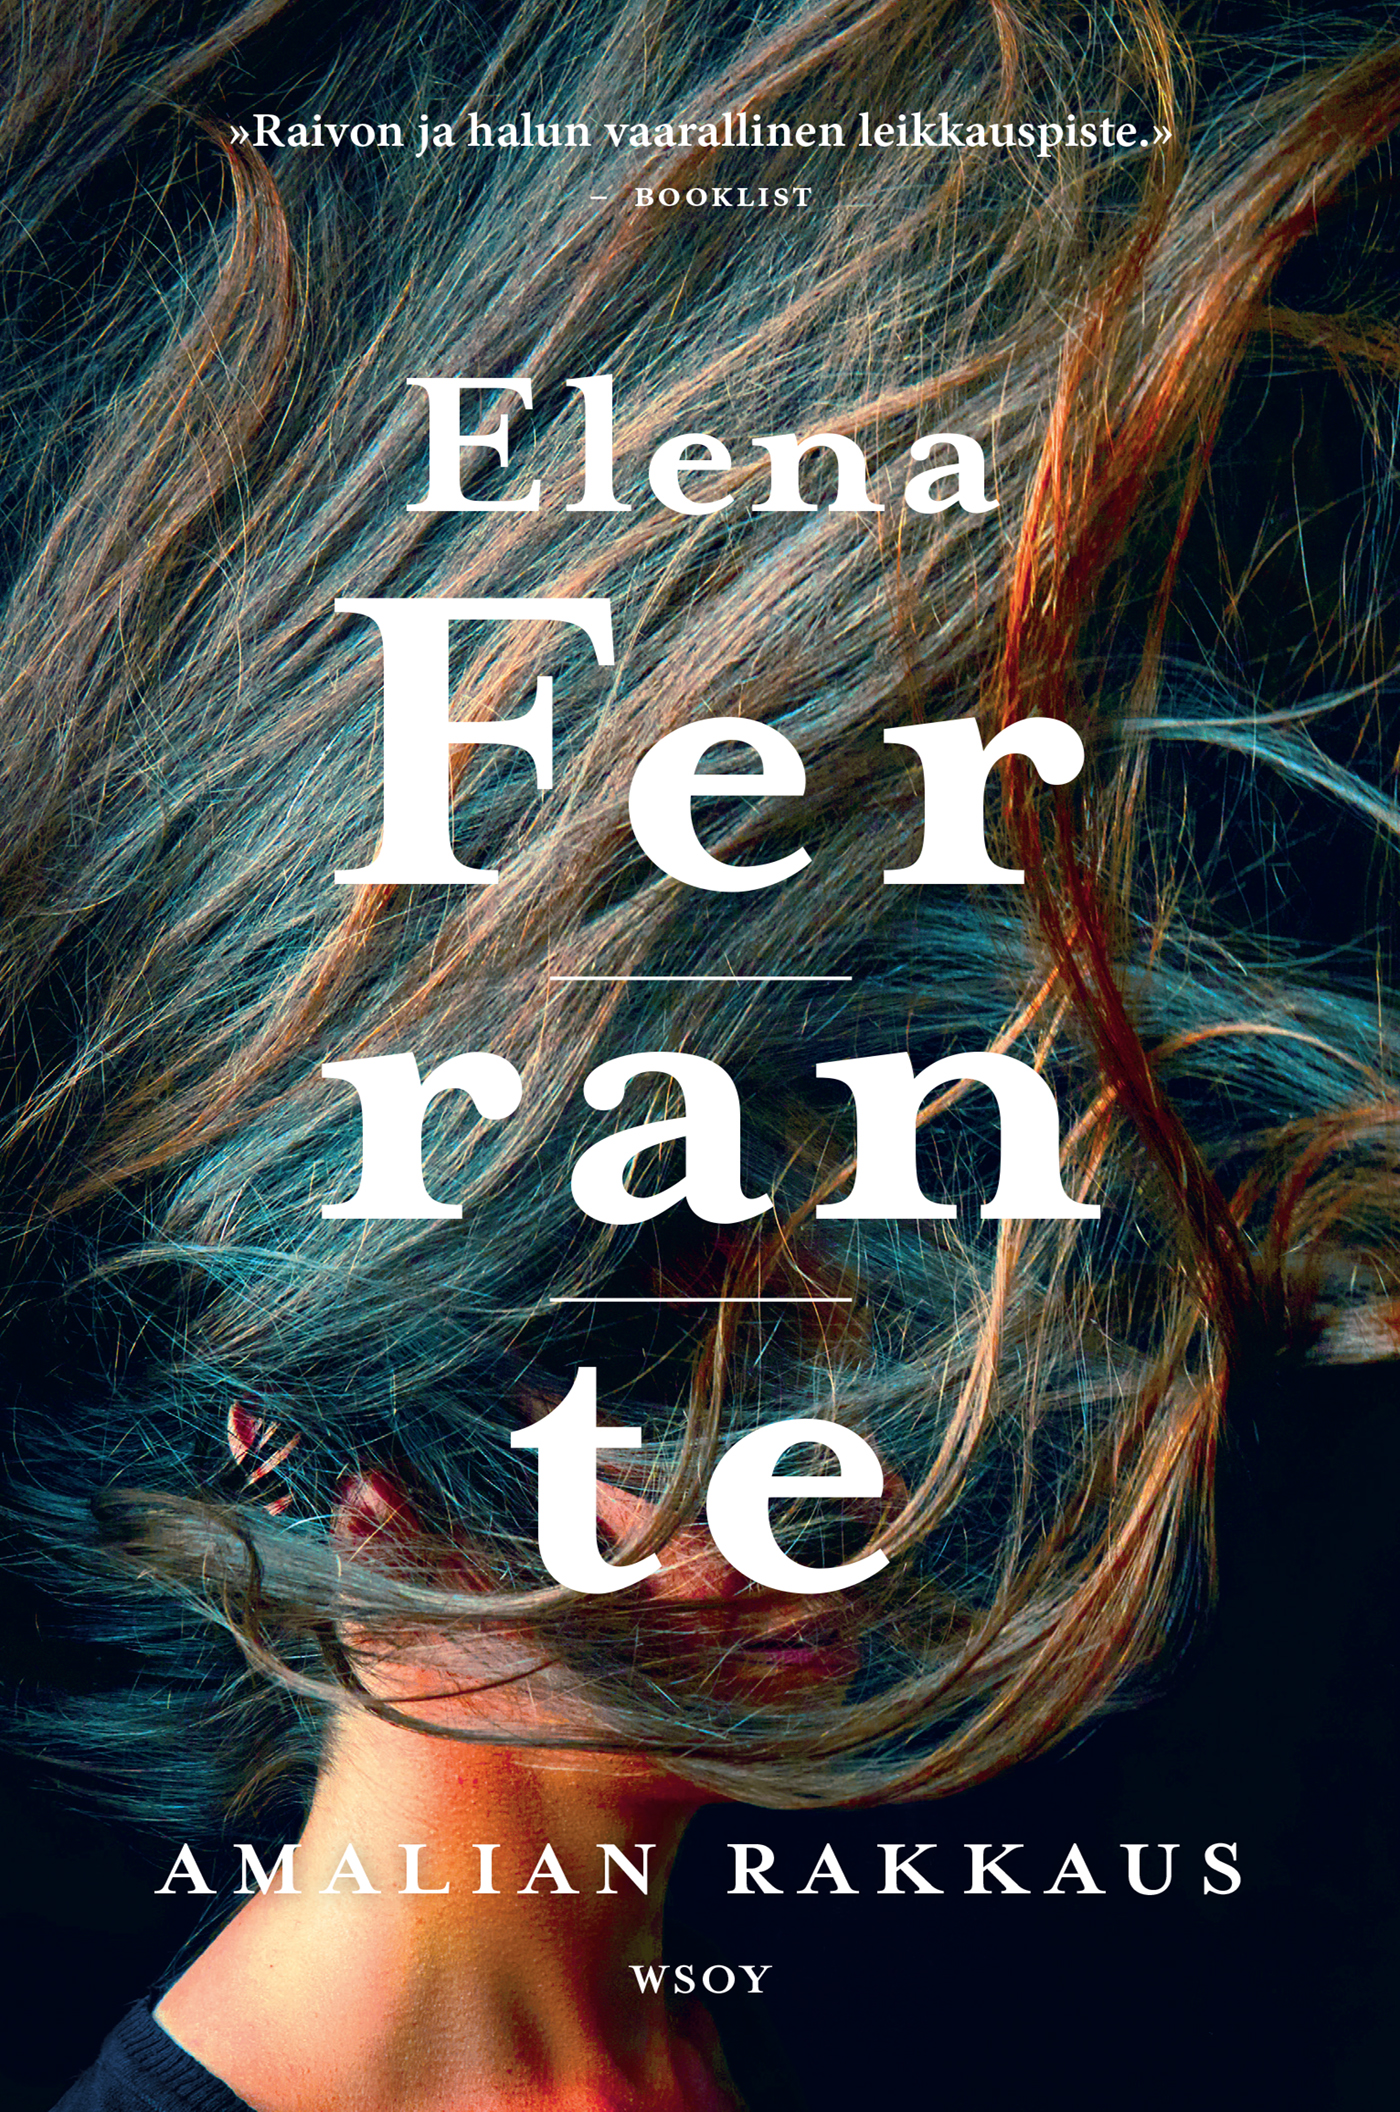 Ferrante, Elena - Amalian rakkaus, e-bok